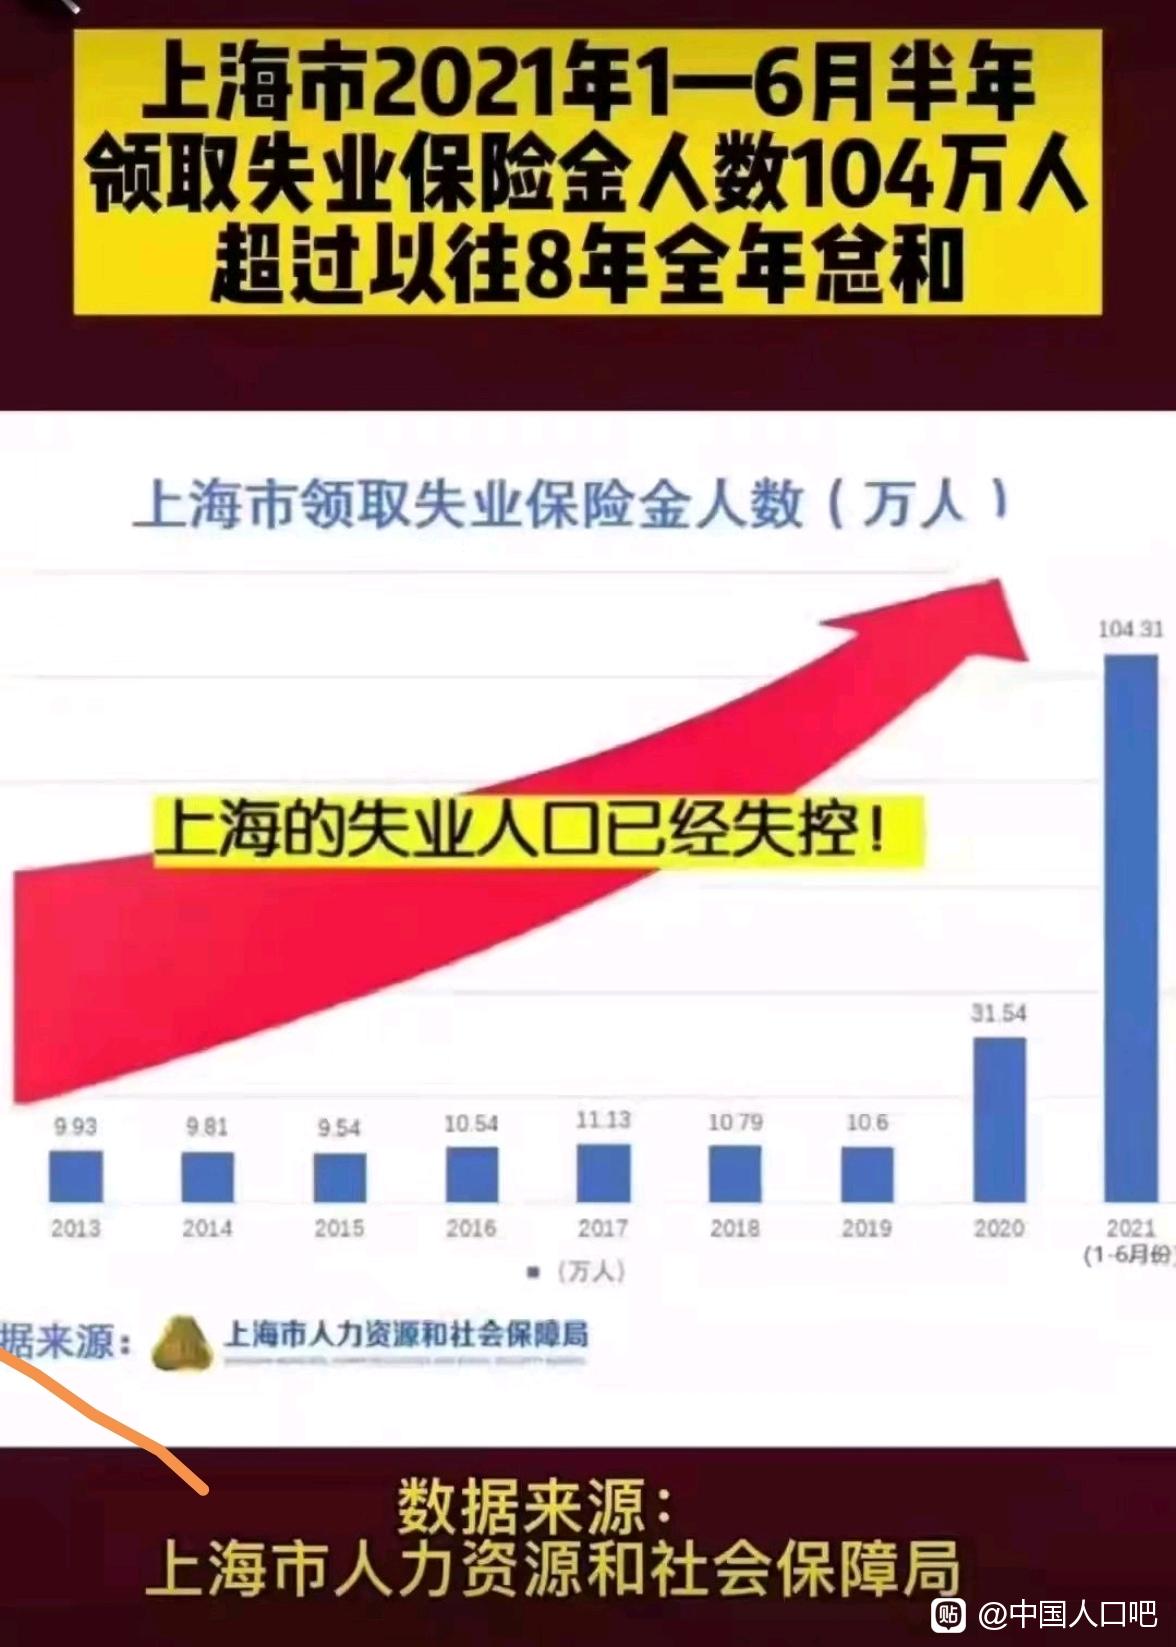 上海上半年领取失业保险金人数104万，超前8年总和？假的